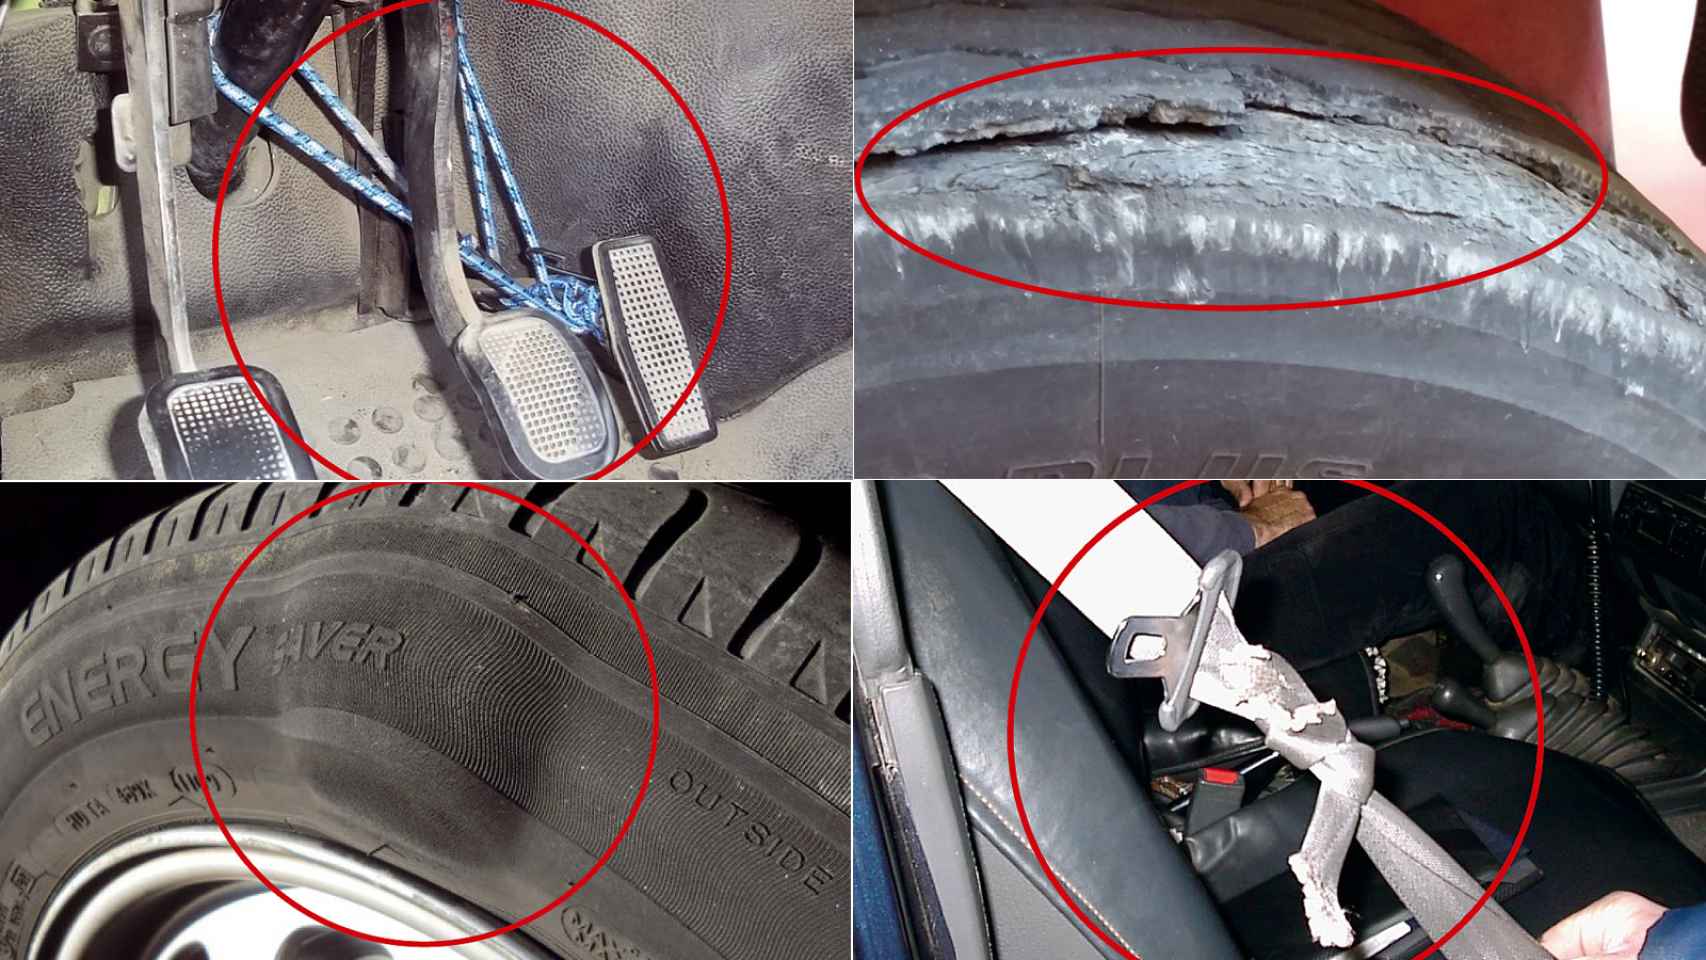 Frenos partidos, airbags quitados: las ‘brutalidades’ encontradas por los inspectores de ITV